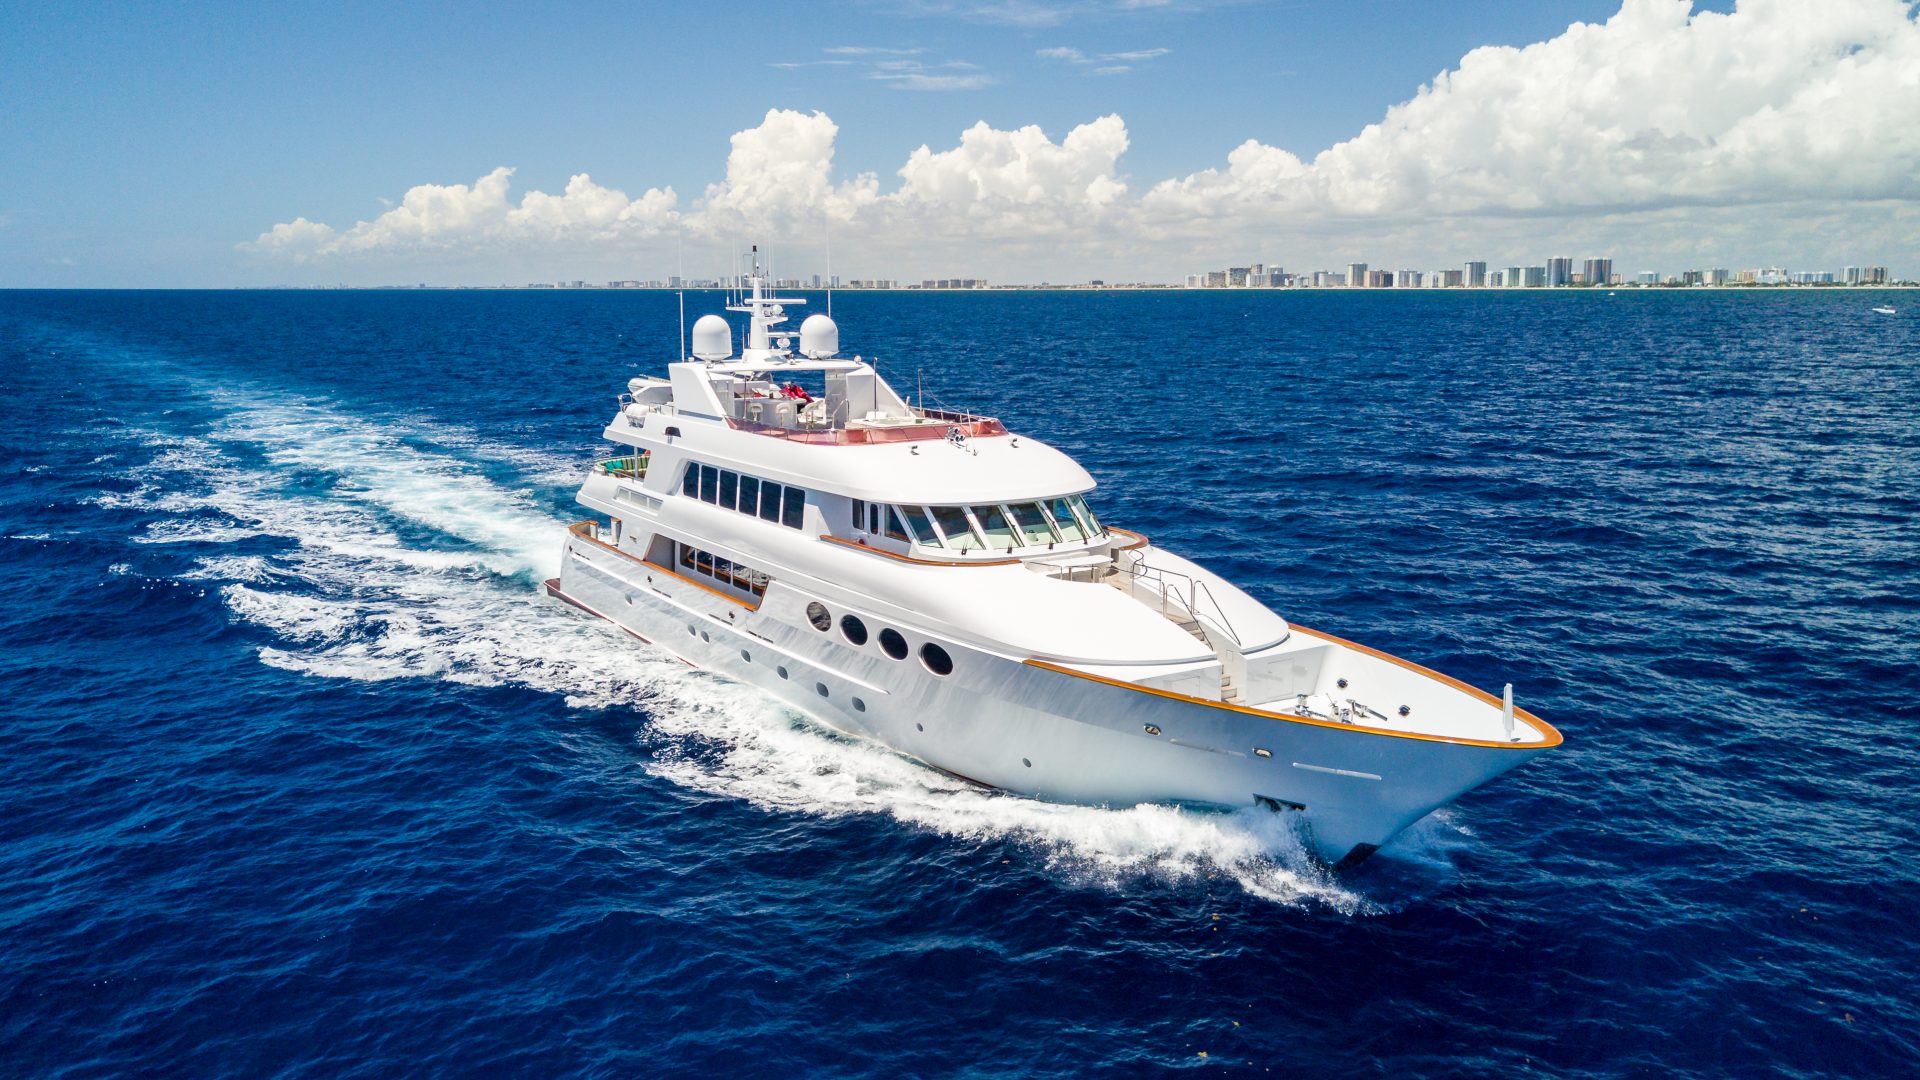 RELENTLESS yacht Charter Brochure